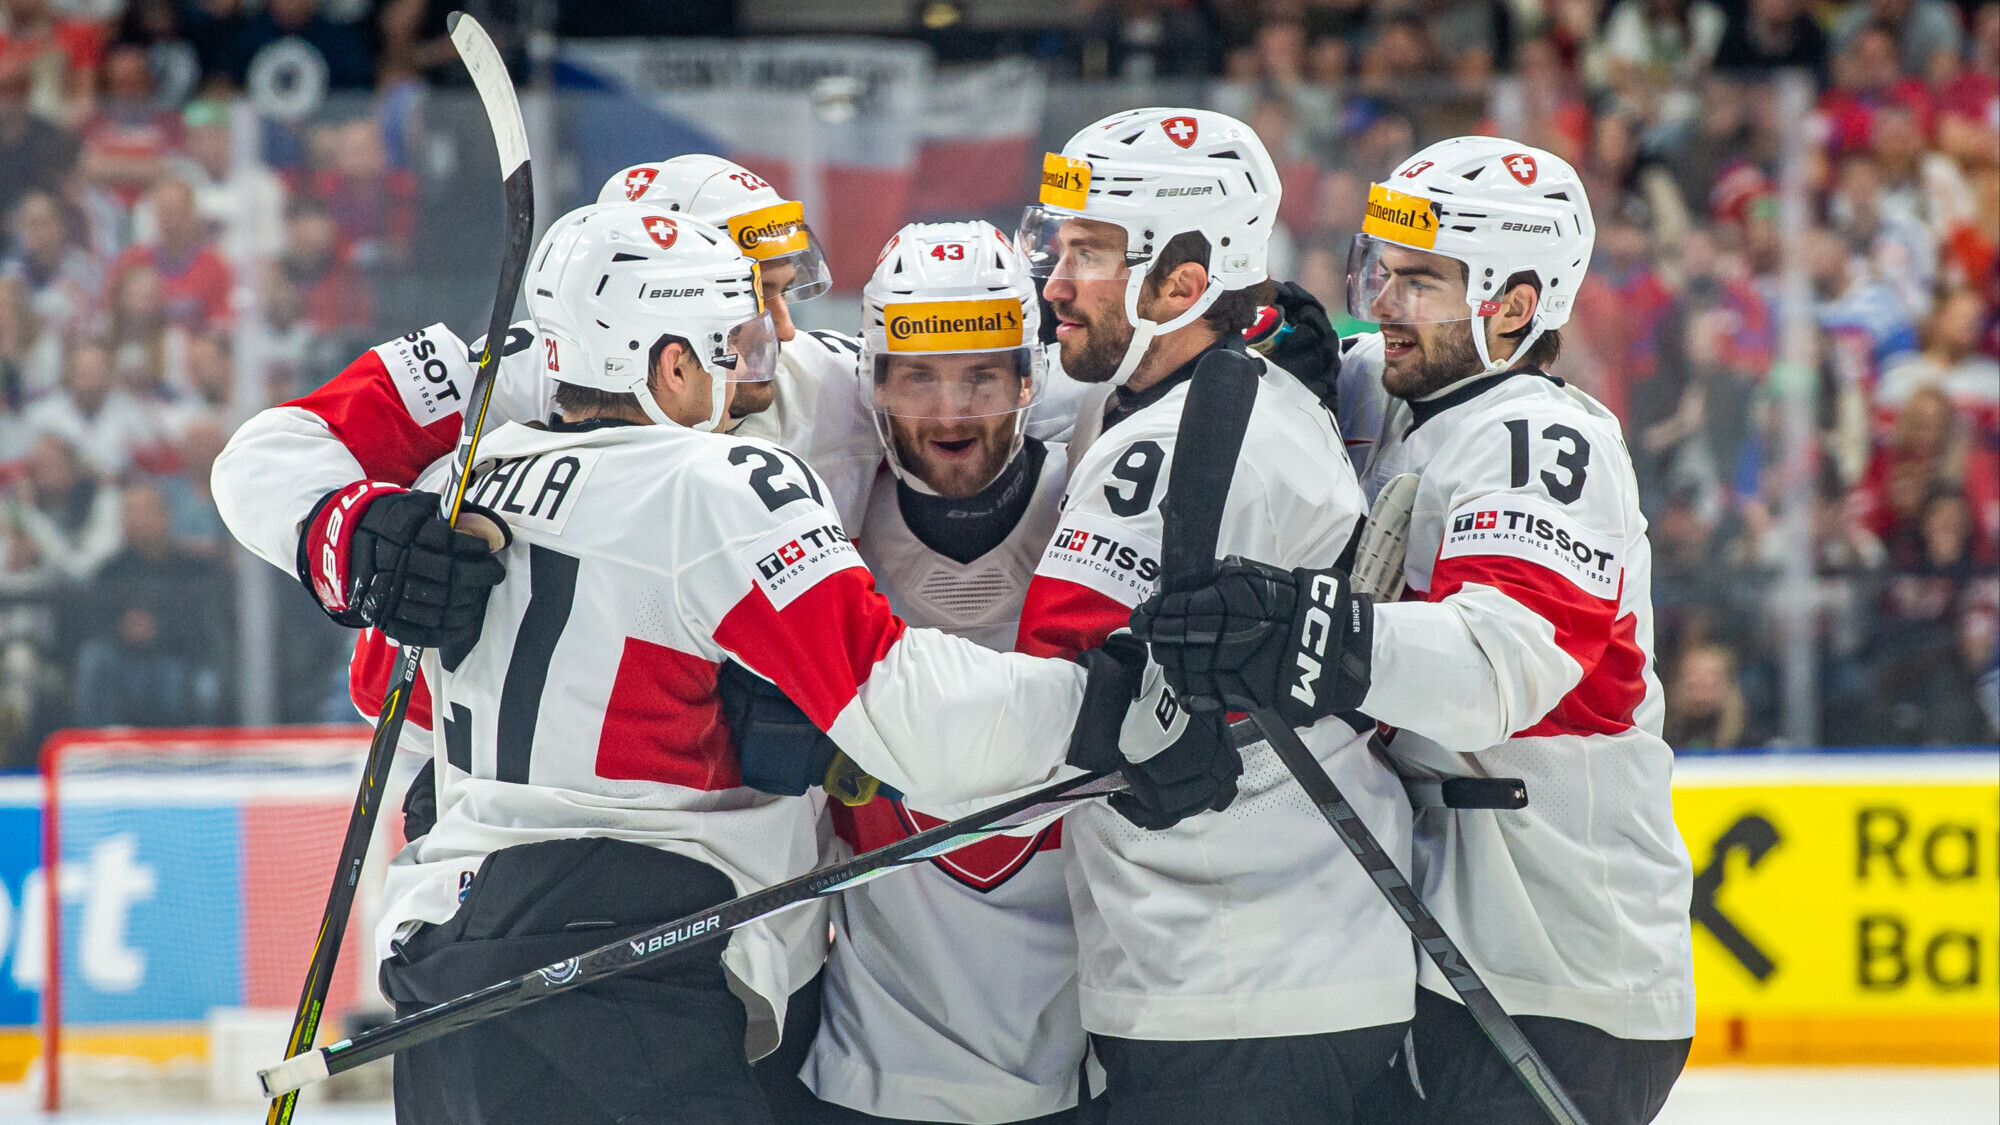 Сборная Швейцарии победила команду Финляндии в матче ЧМ по хоккею, Швеция выиграла седьмой матч подряд